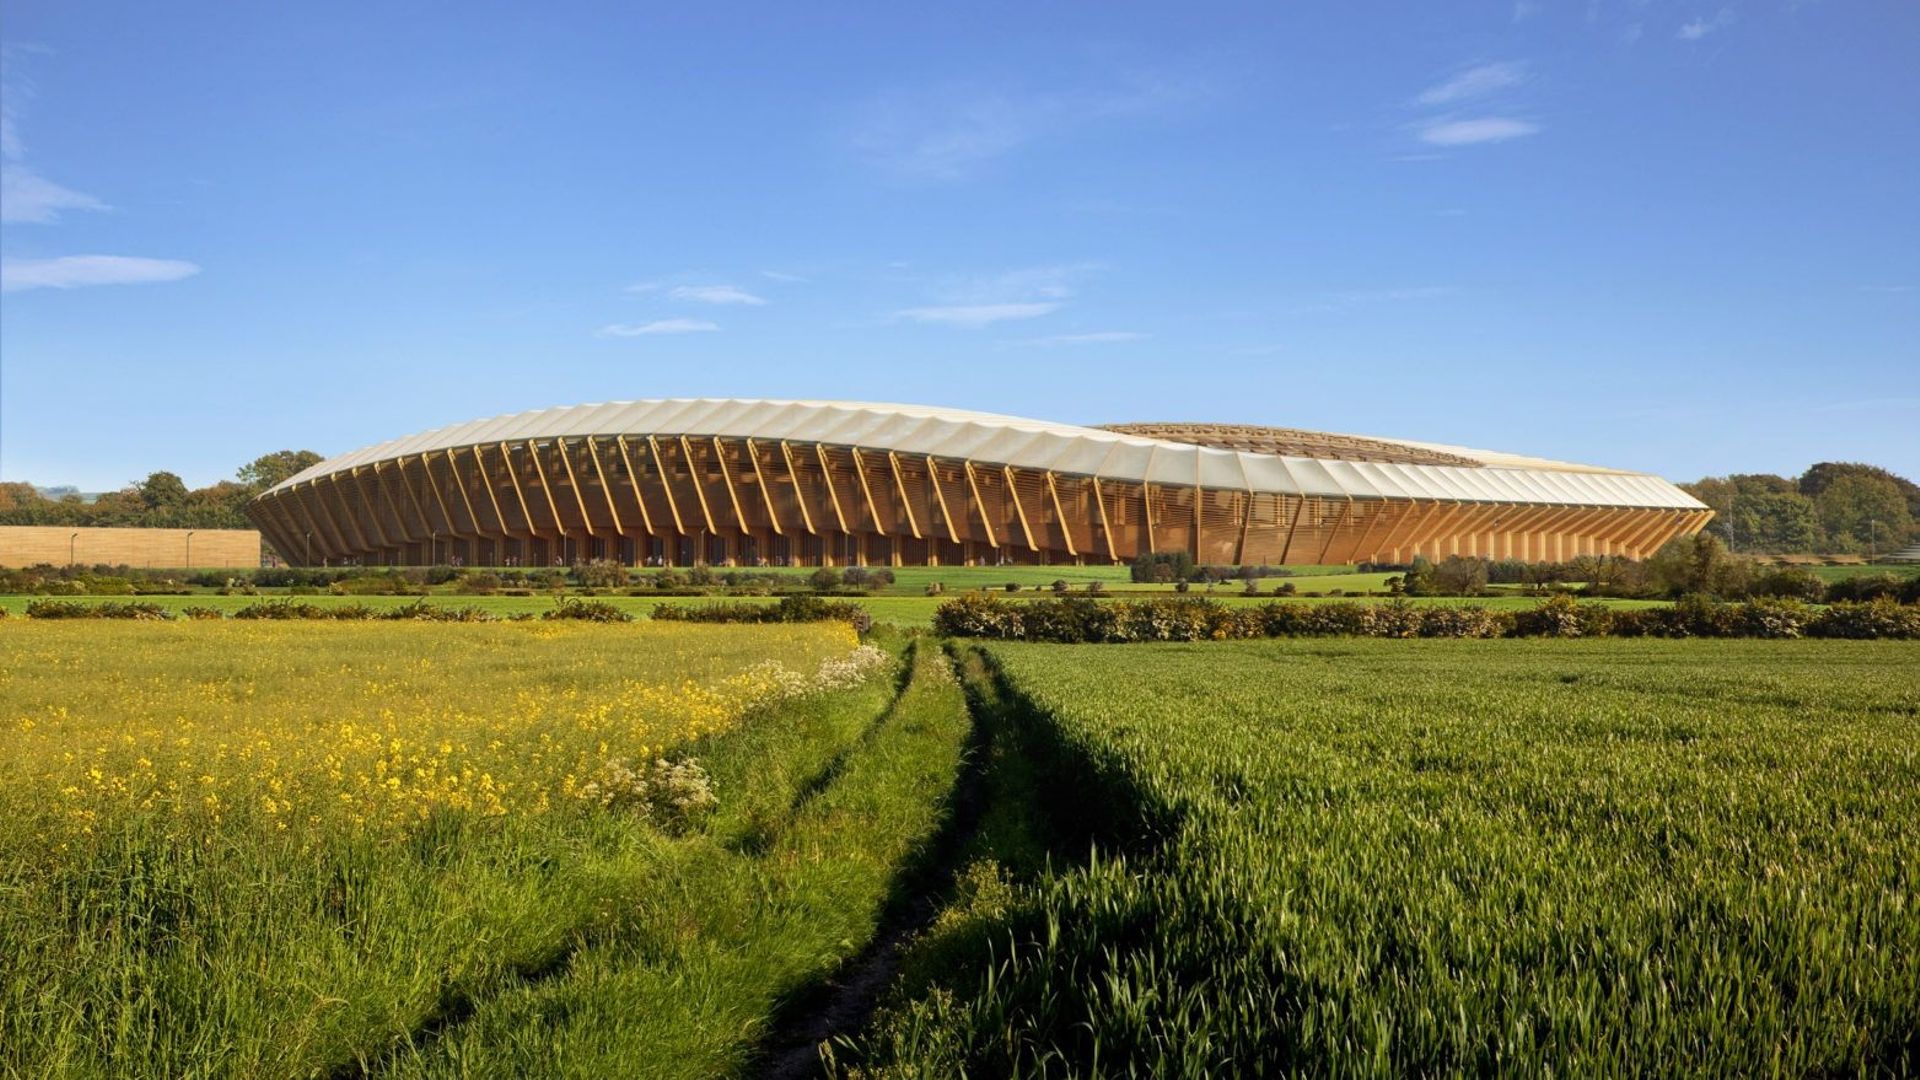 Ce stade de football, entièrement fait de bois, est signé par le bureau Zaha Hadid Architects